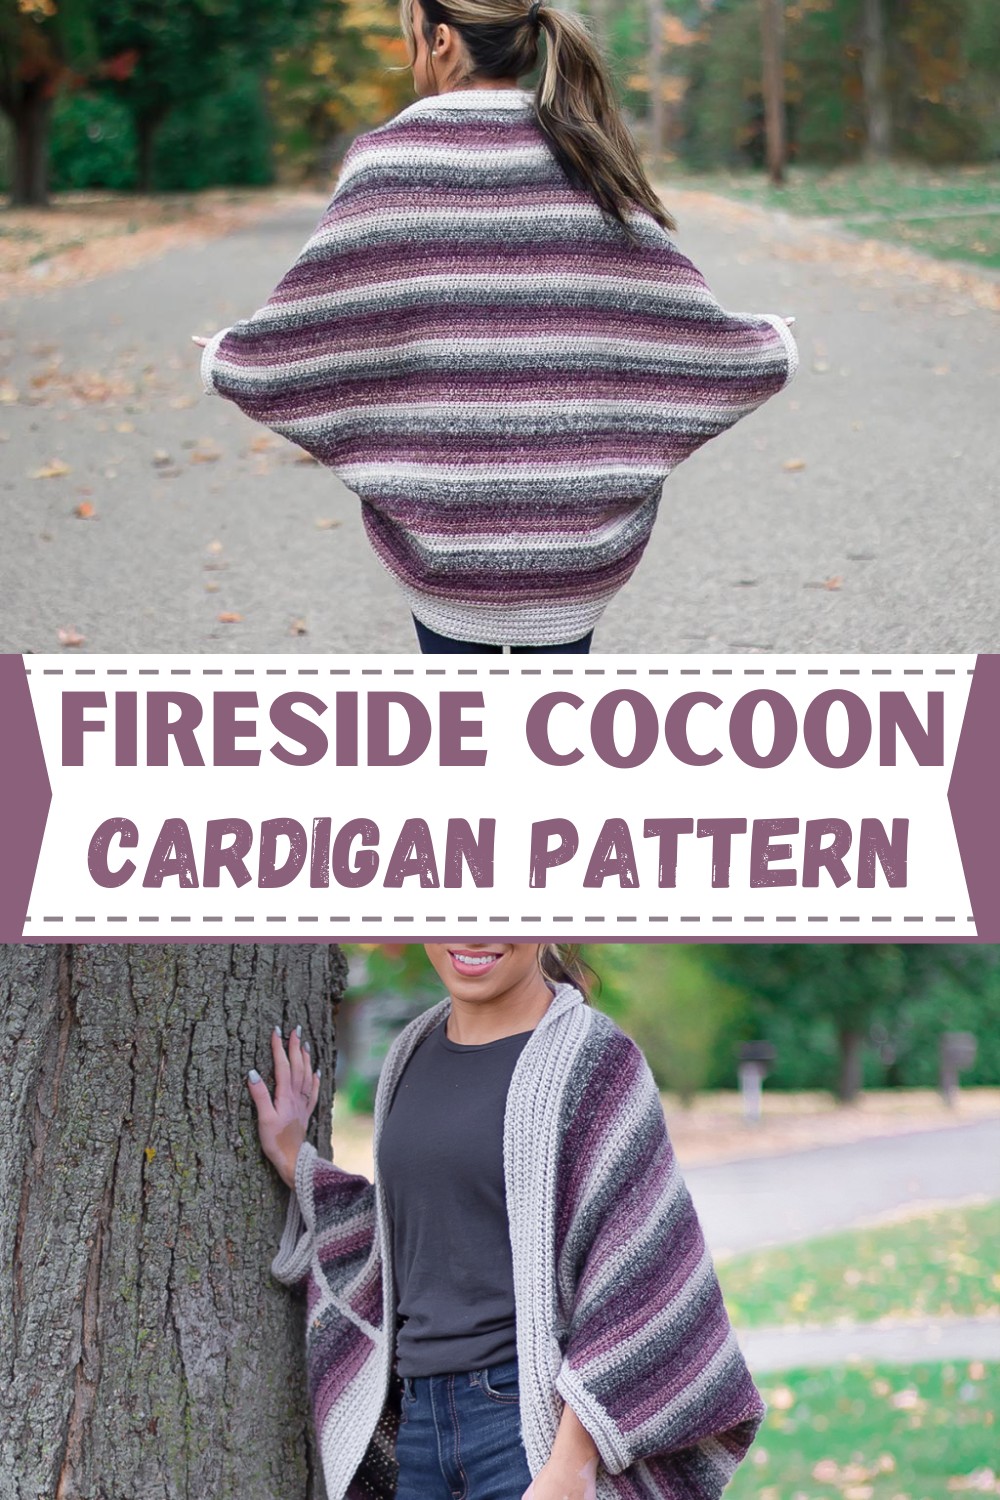 Fireside Cocoon Cardigan Pattern